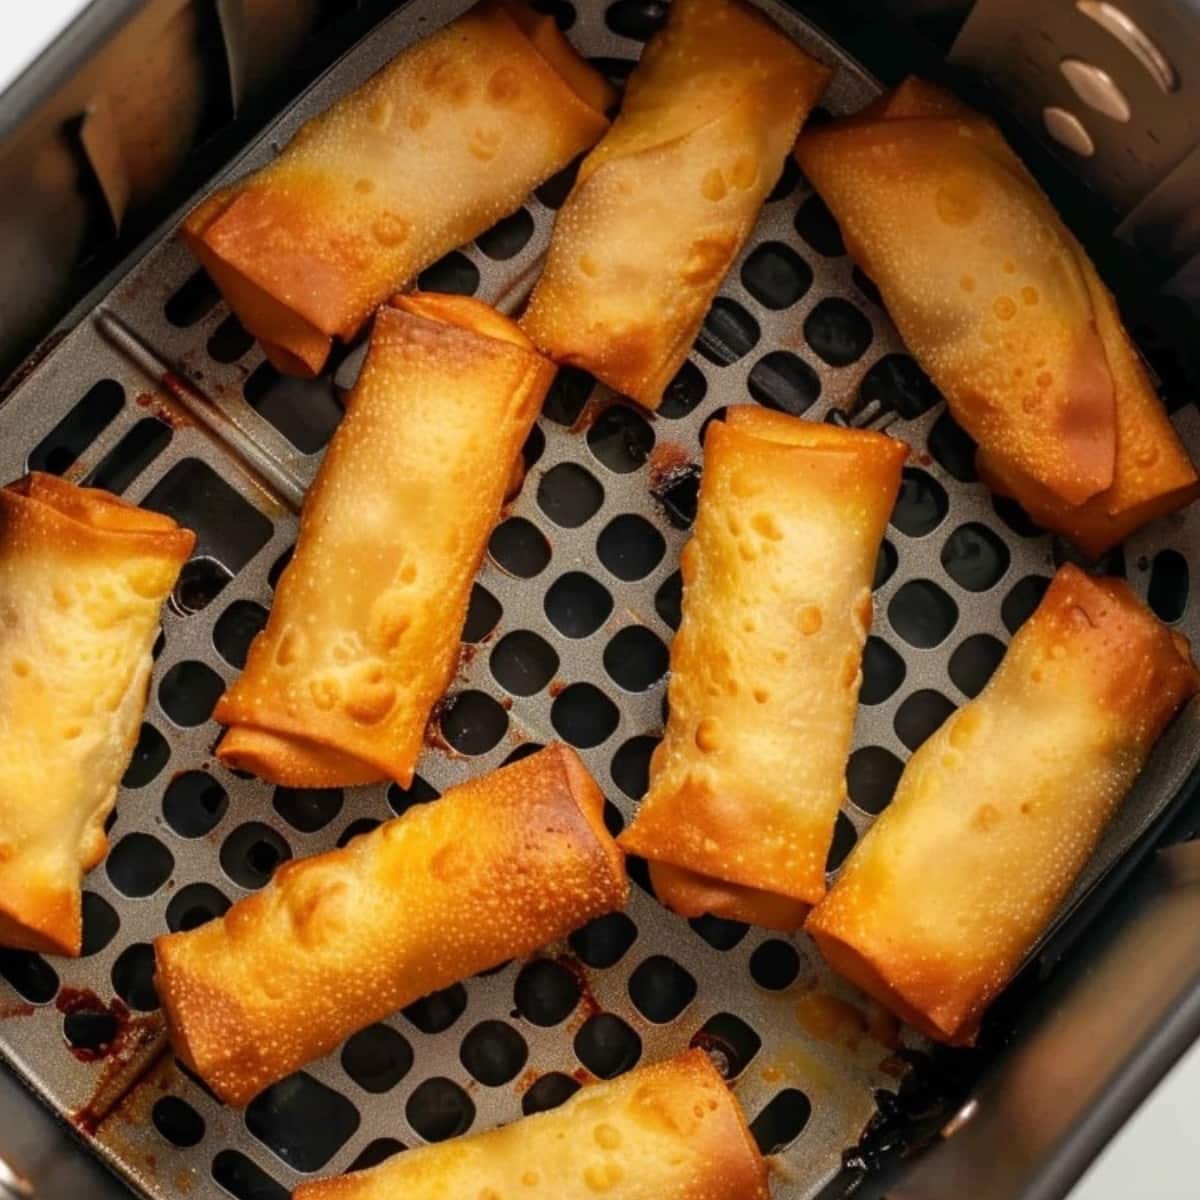 Egg rolls inside an air fryer basket.